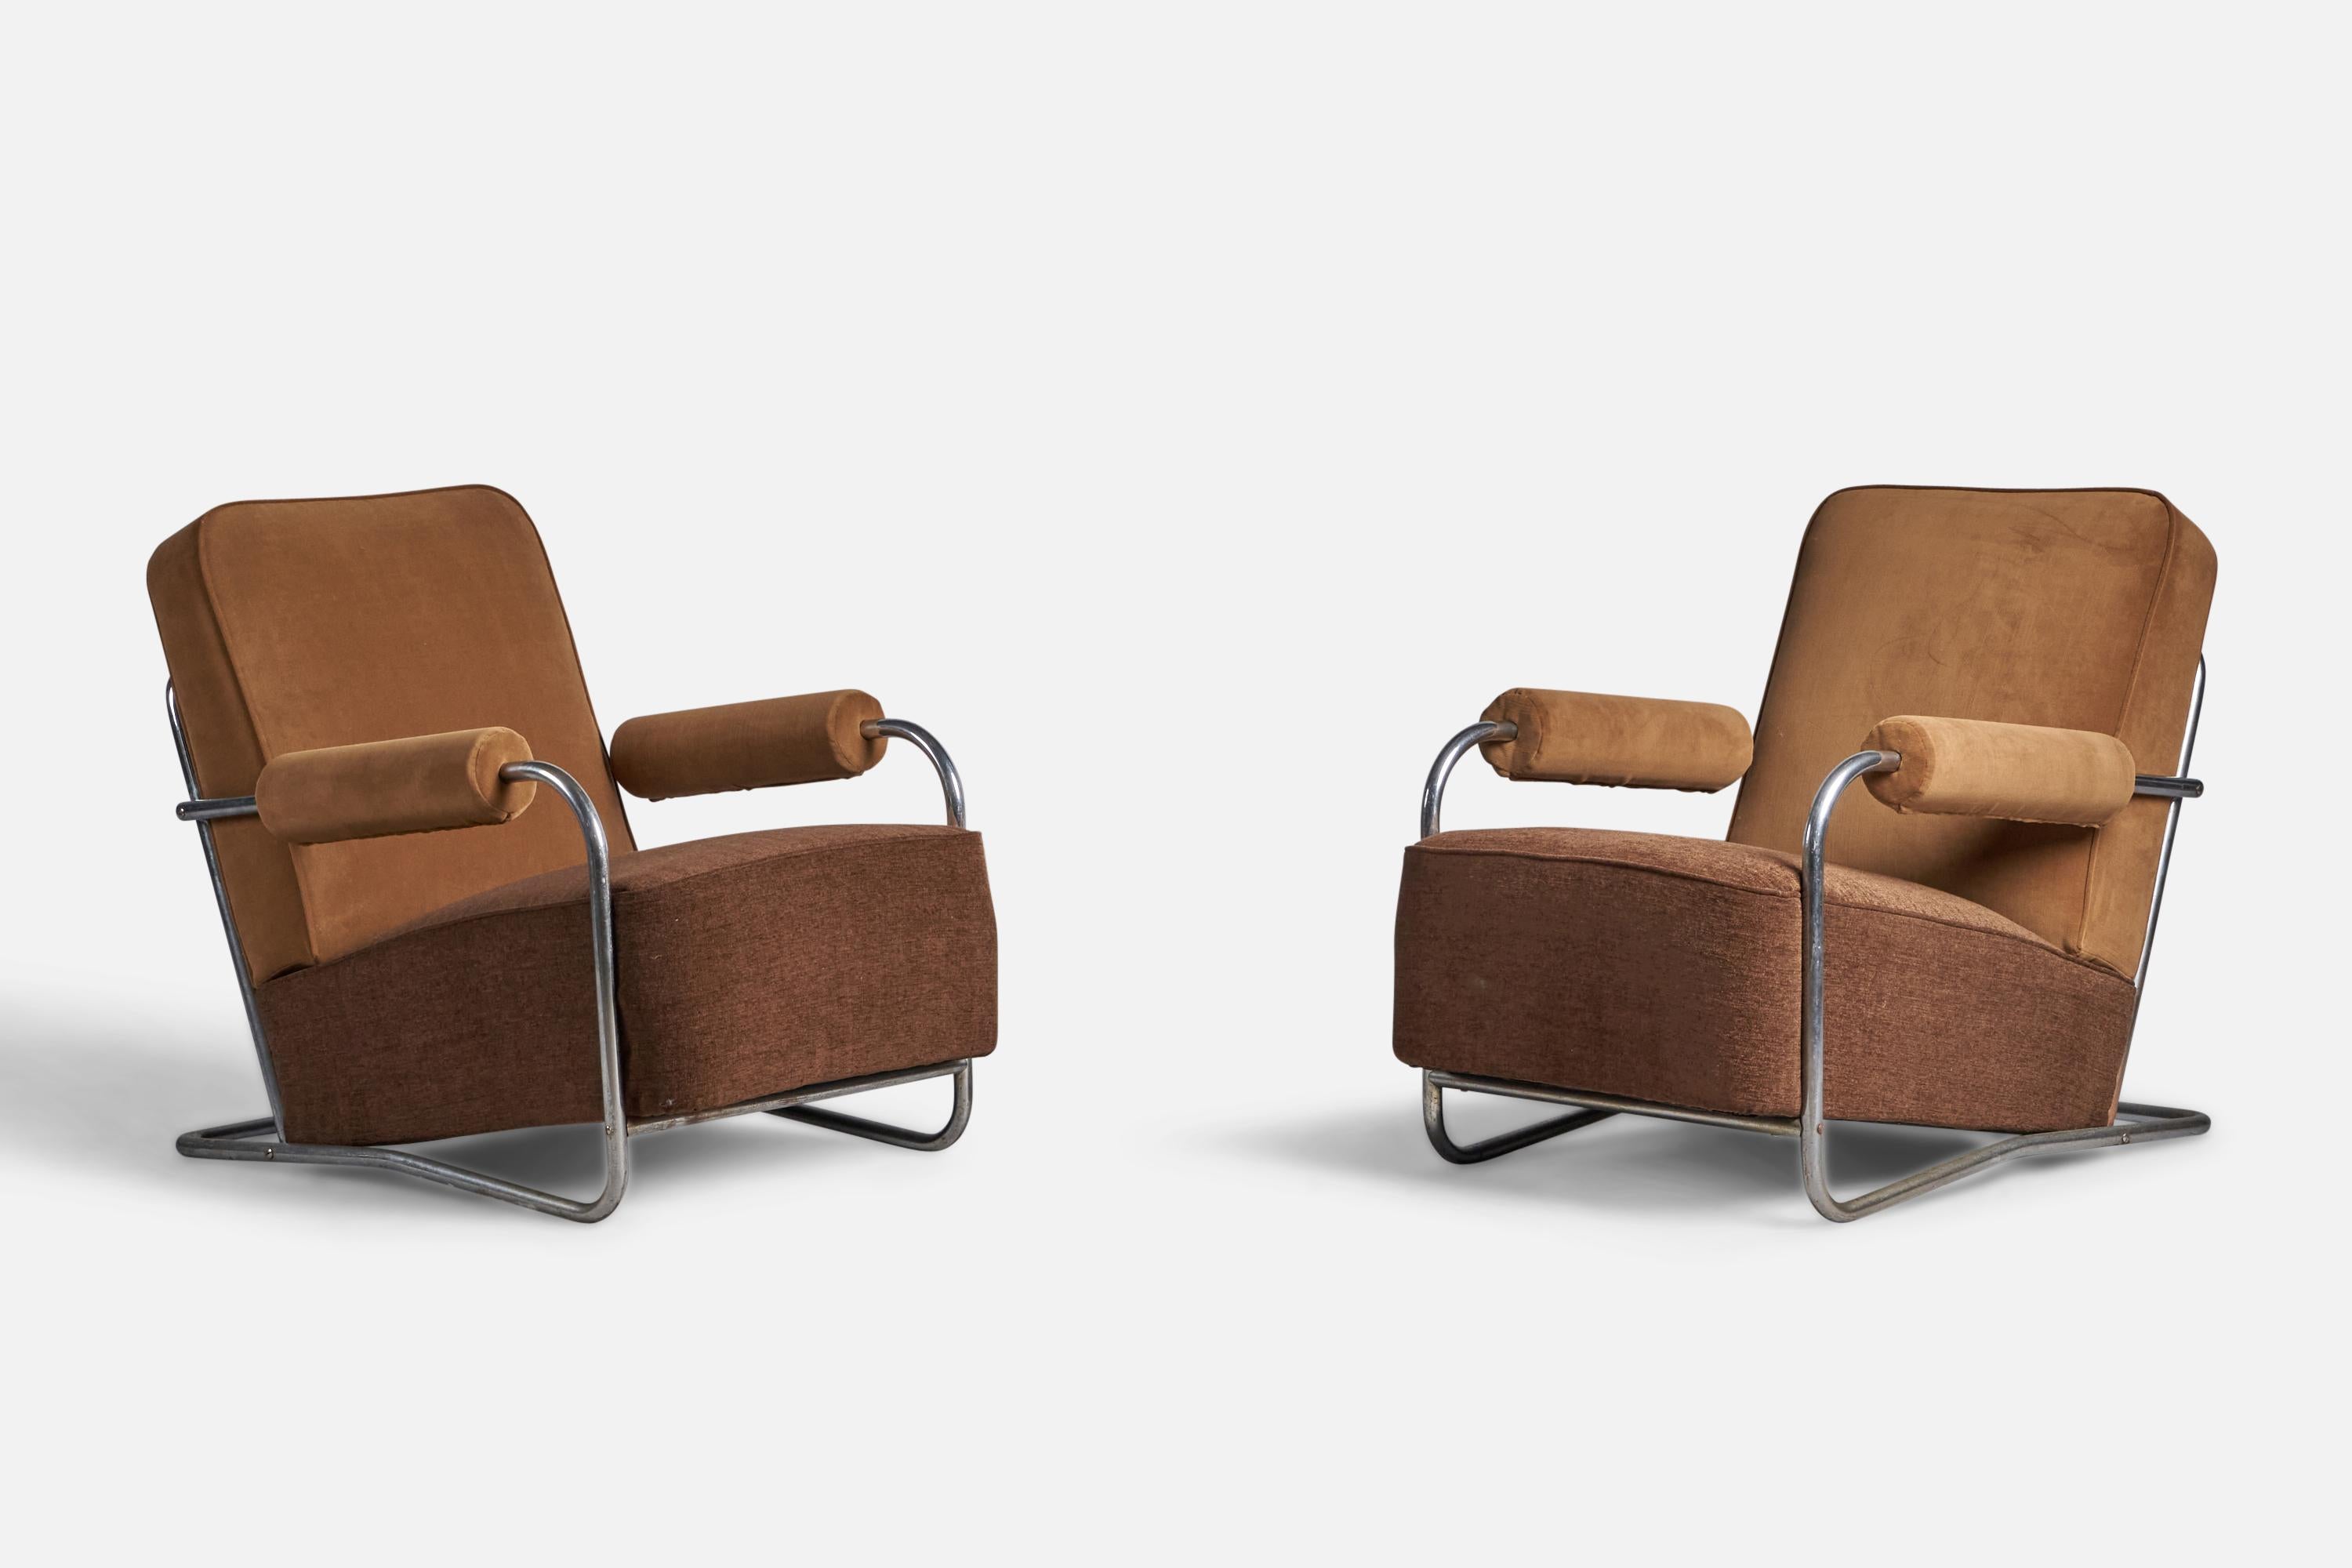 Ein Paar Lounge-Sessel aus Stahlrohr, braunem Stoff und beigem Samt, entworfen und hergestellt in den USA, 1930er Jahre.

17